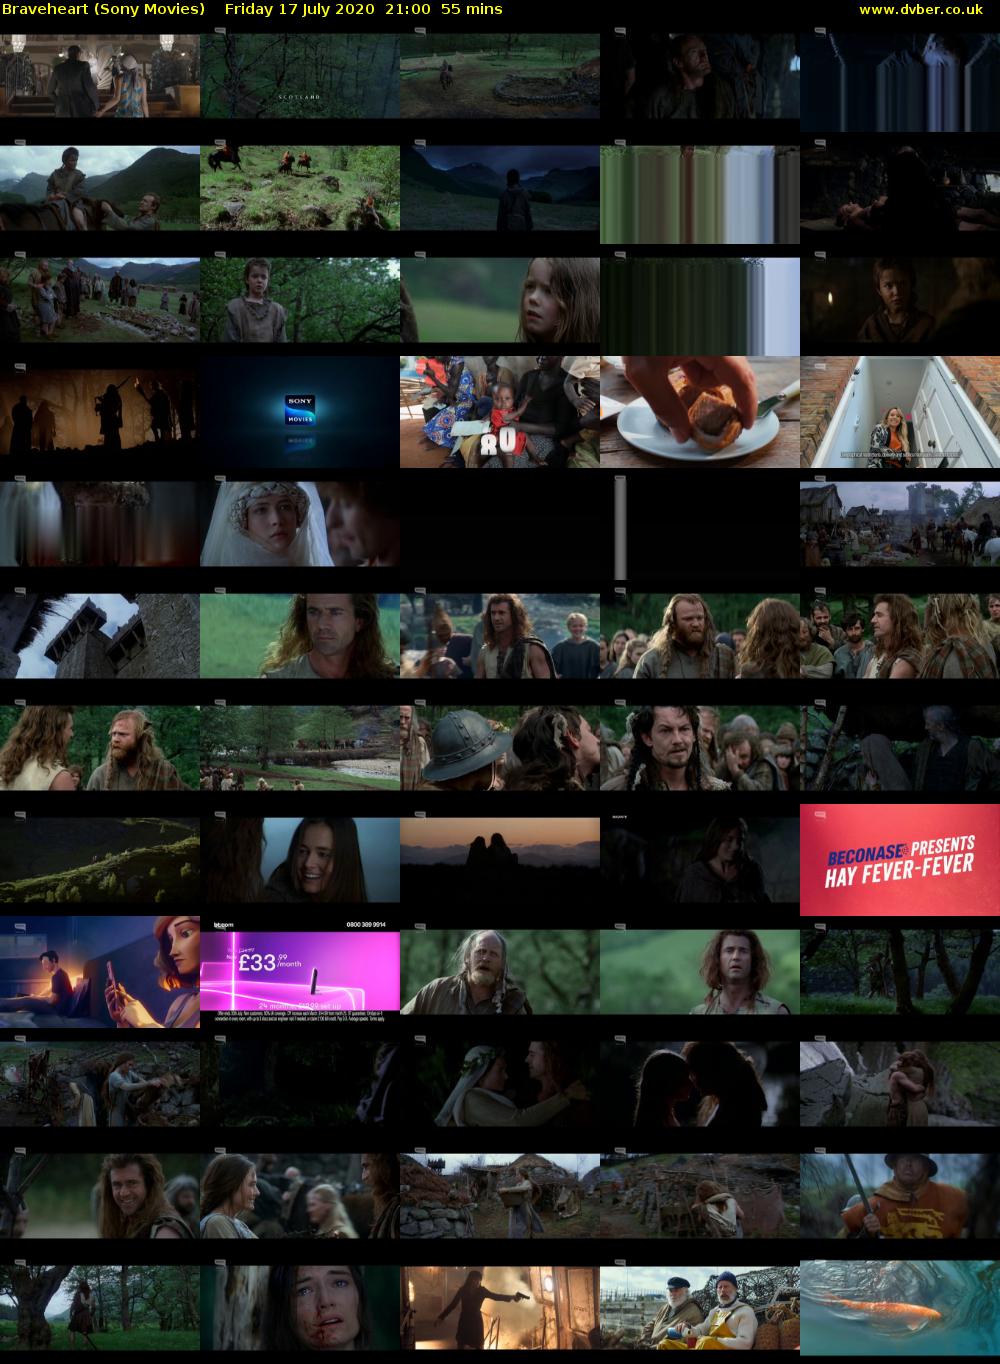 Braveheart (Sony Movies) Friday 17 July 2020 21:00 - 21:55